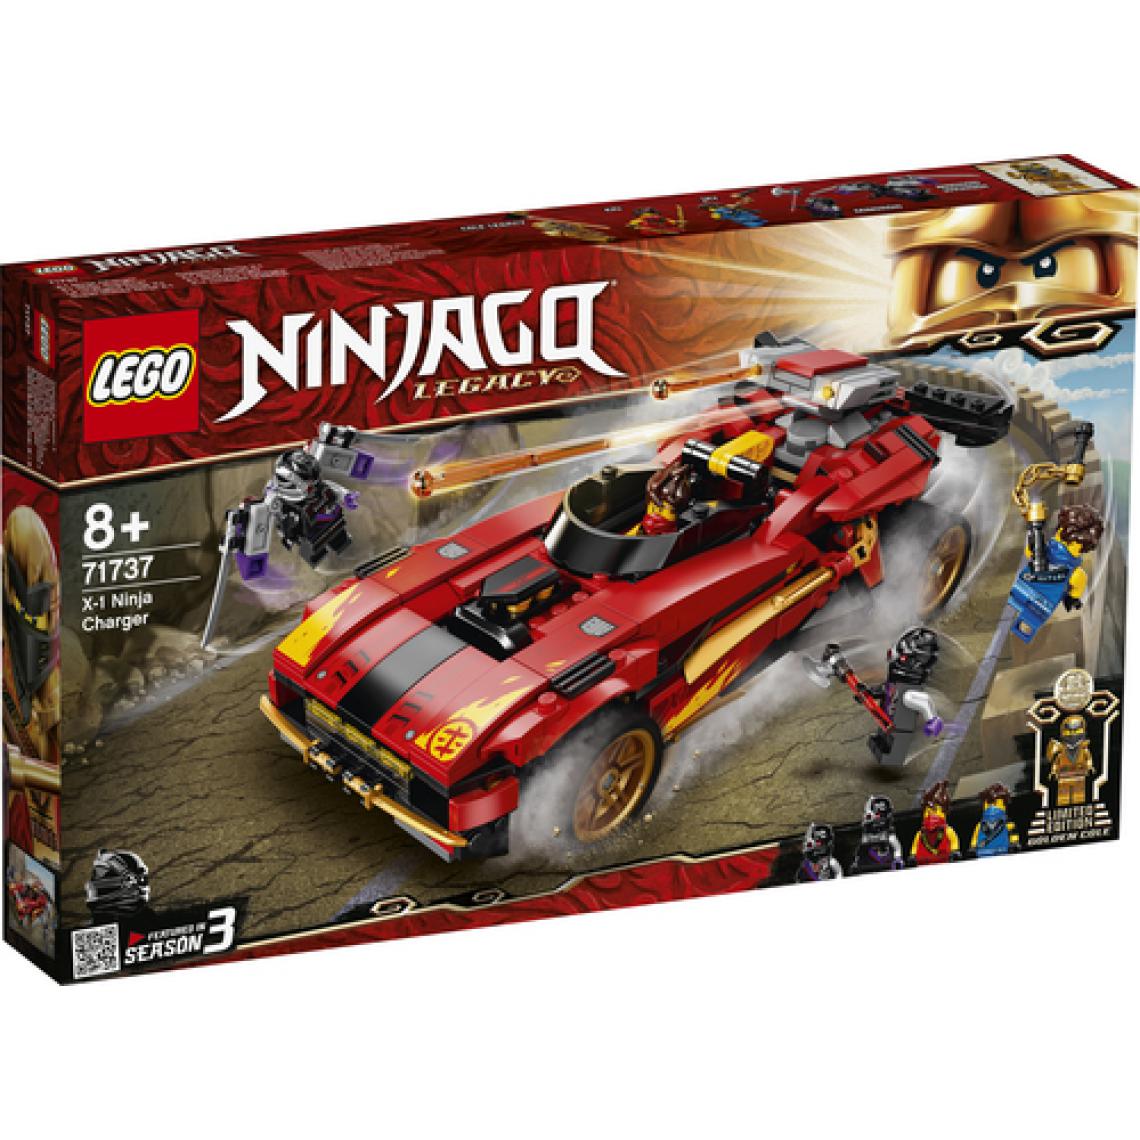 Lego - 71737 Le chargeur Ninja X-1 - Briques Lego